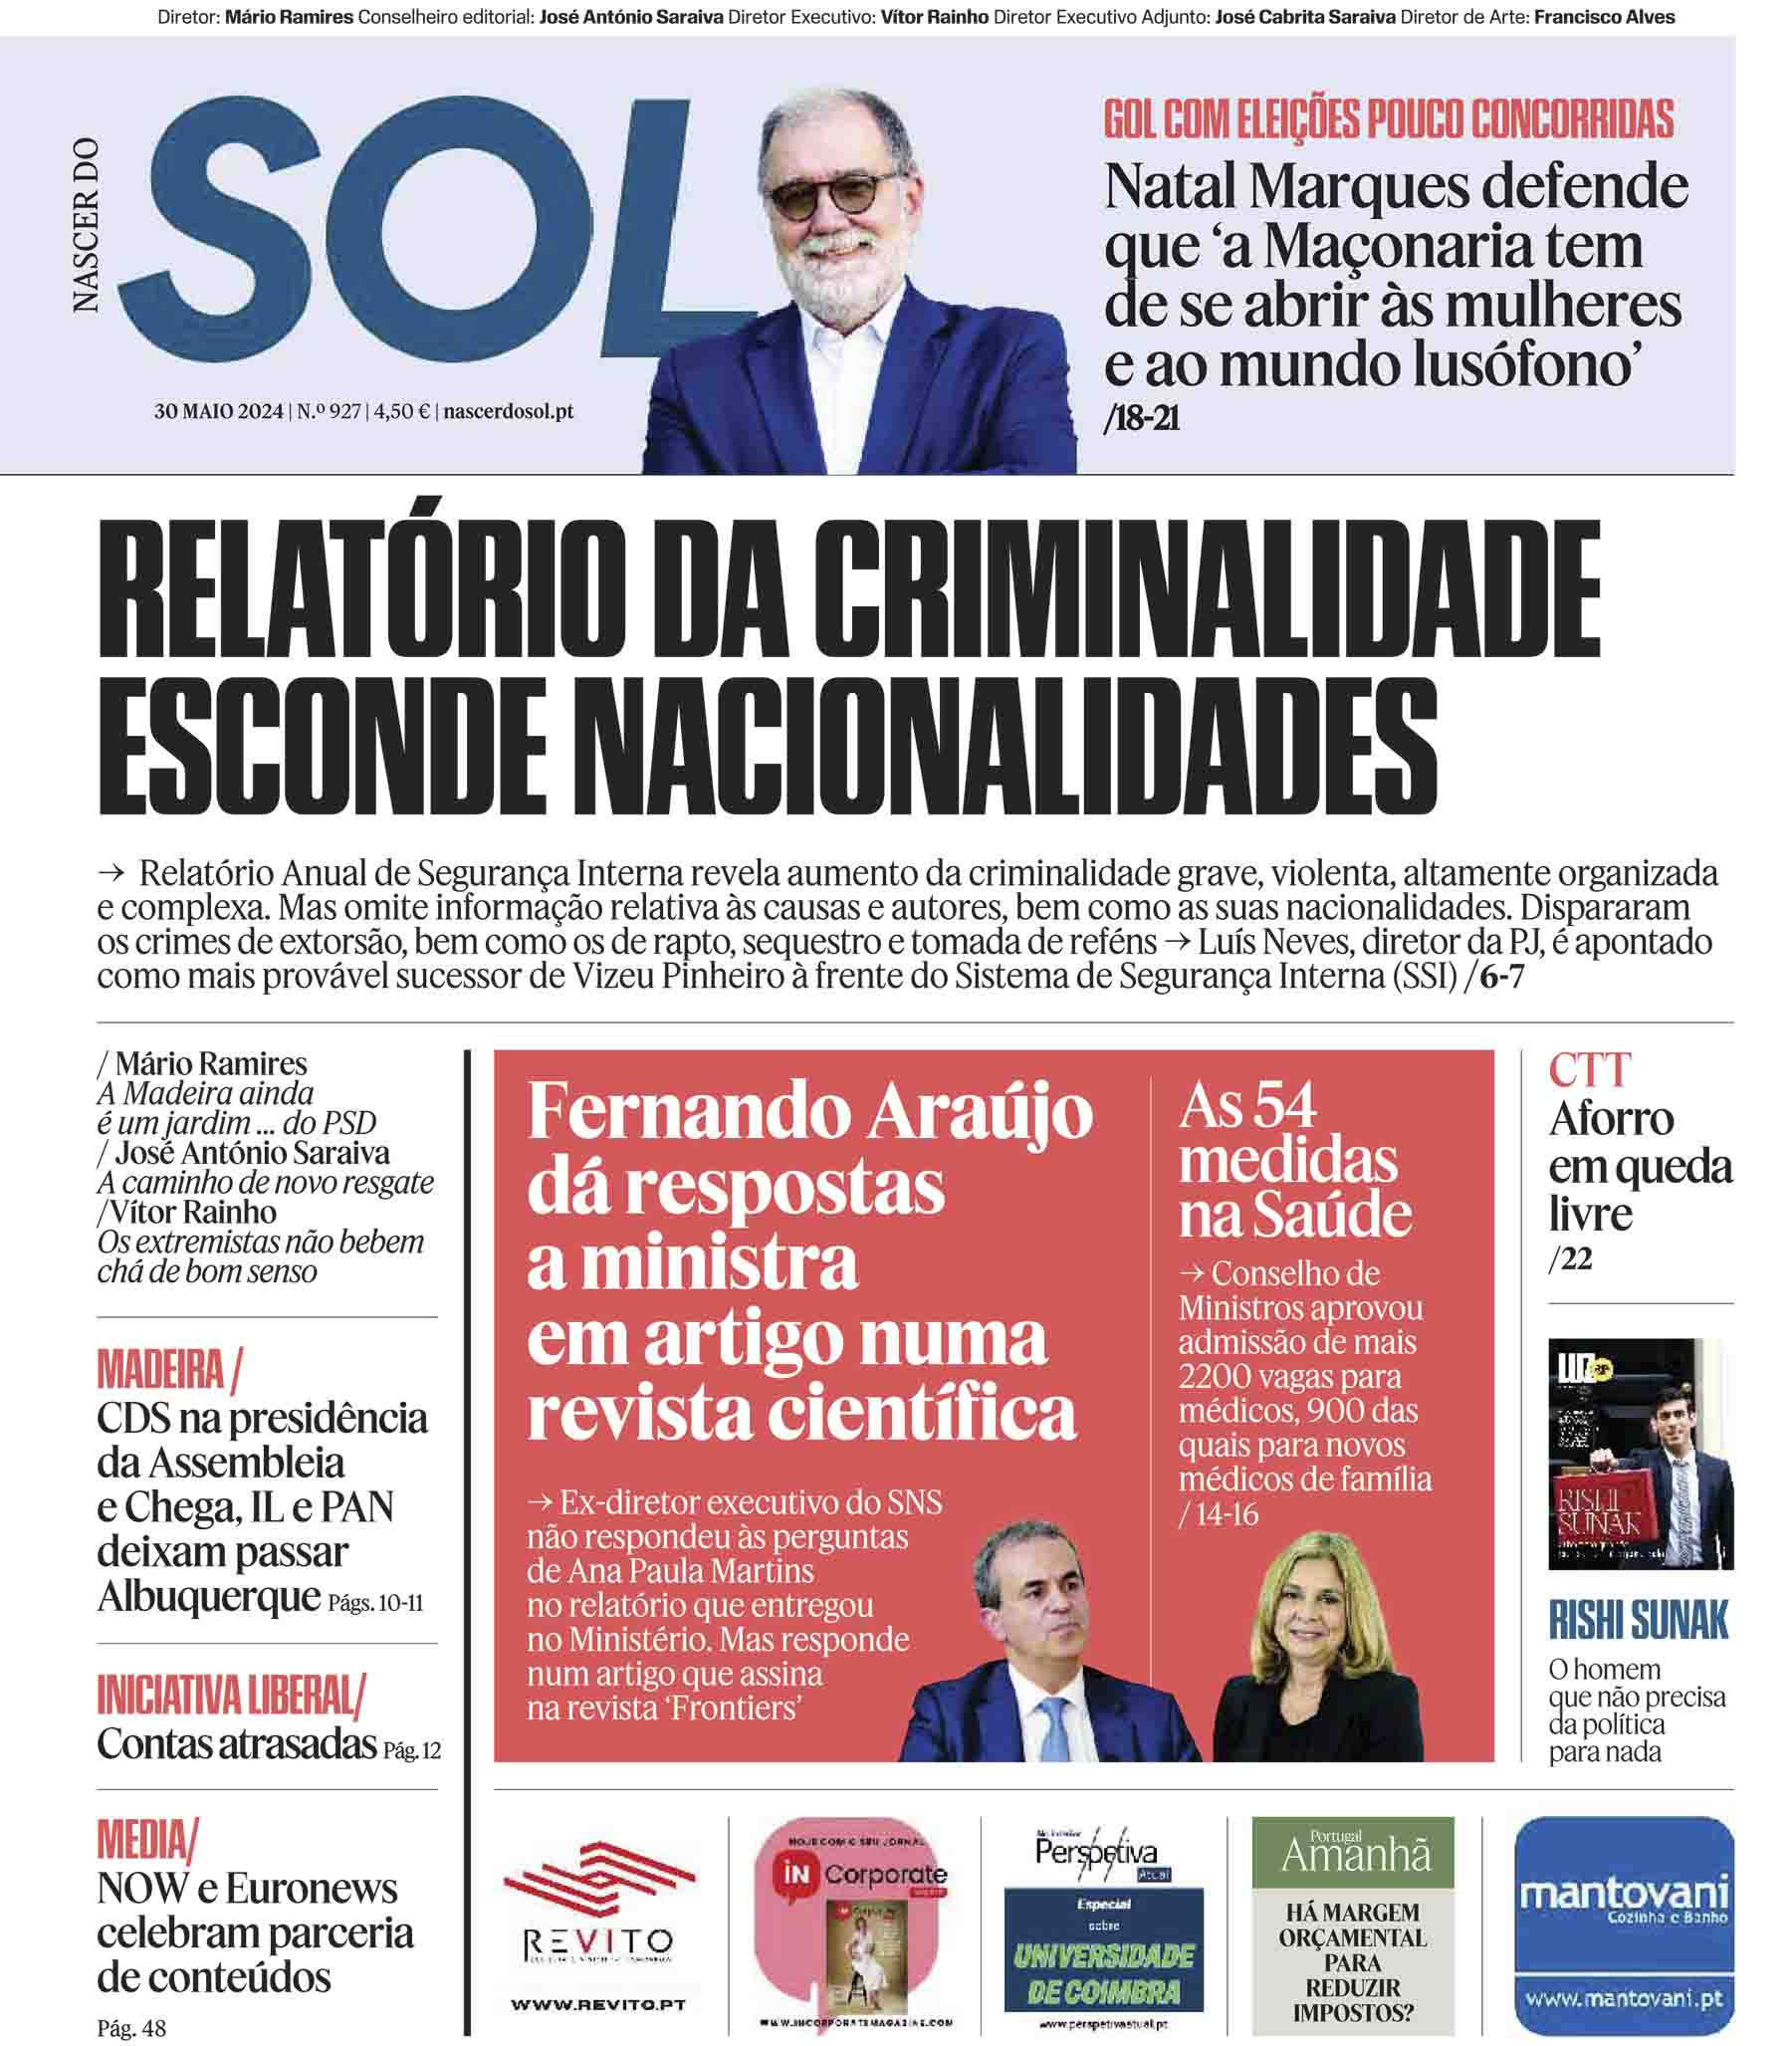 Capa do Jornal SOL do dia 30 de Maio de 2024